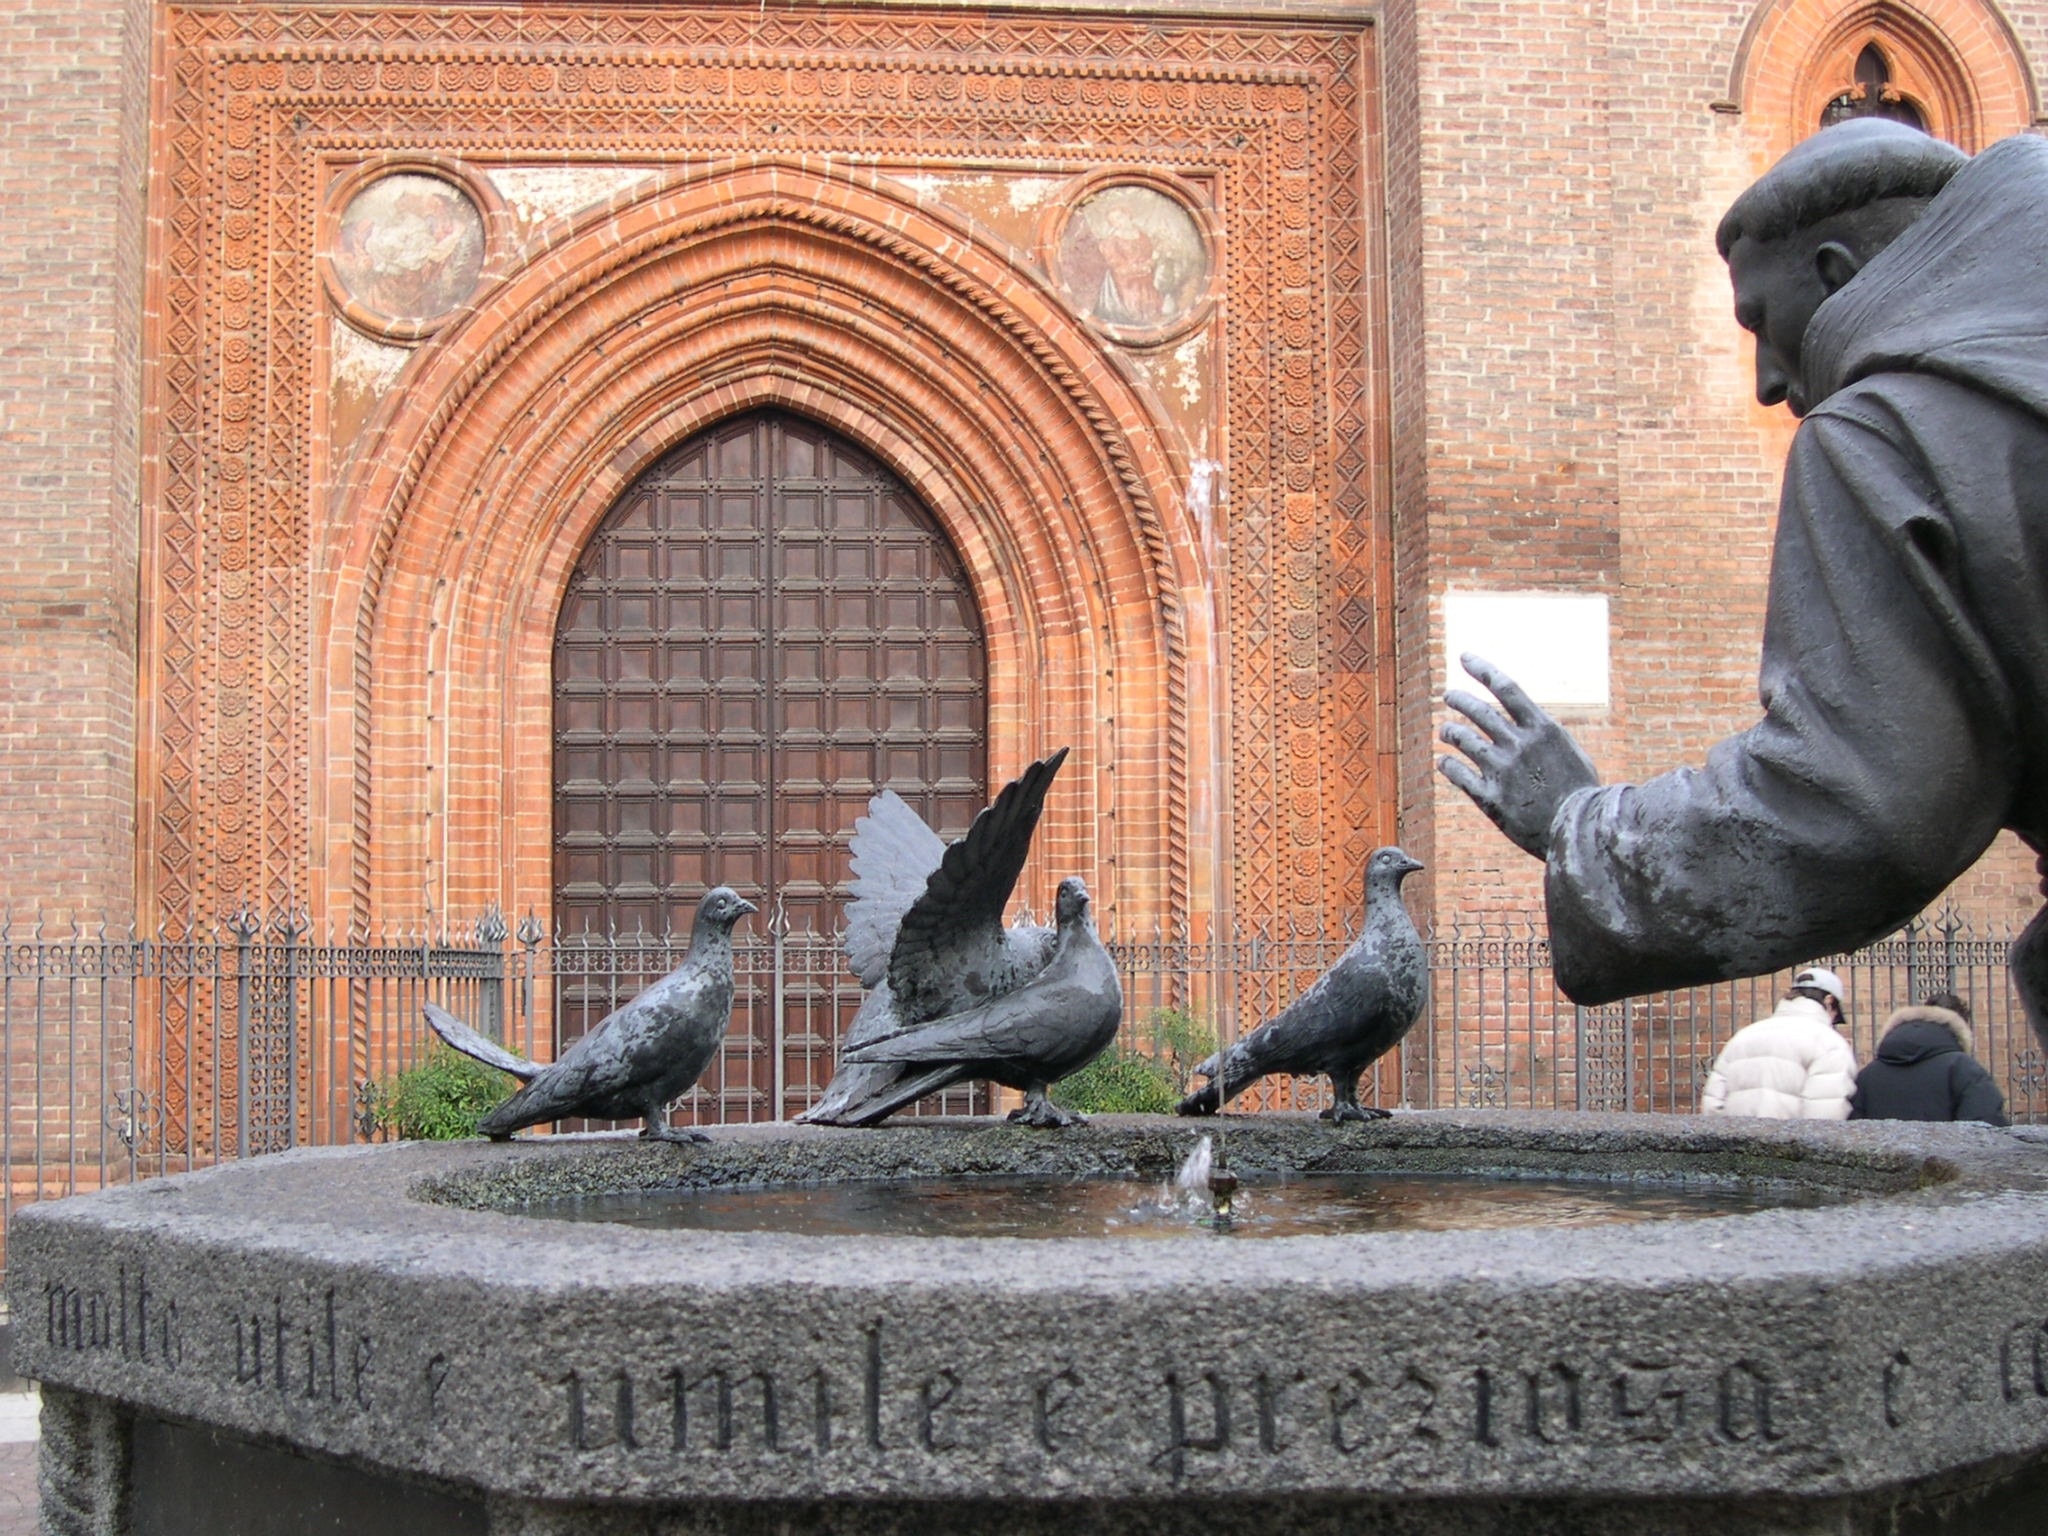 priest and doves concrete statute